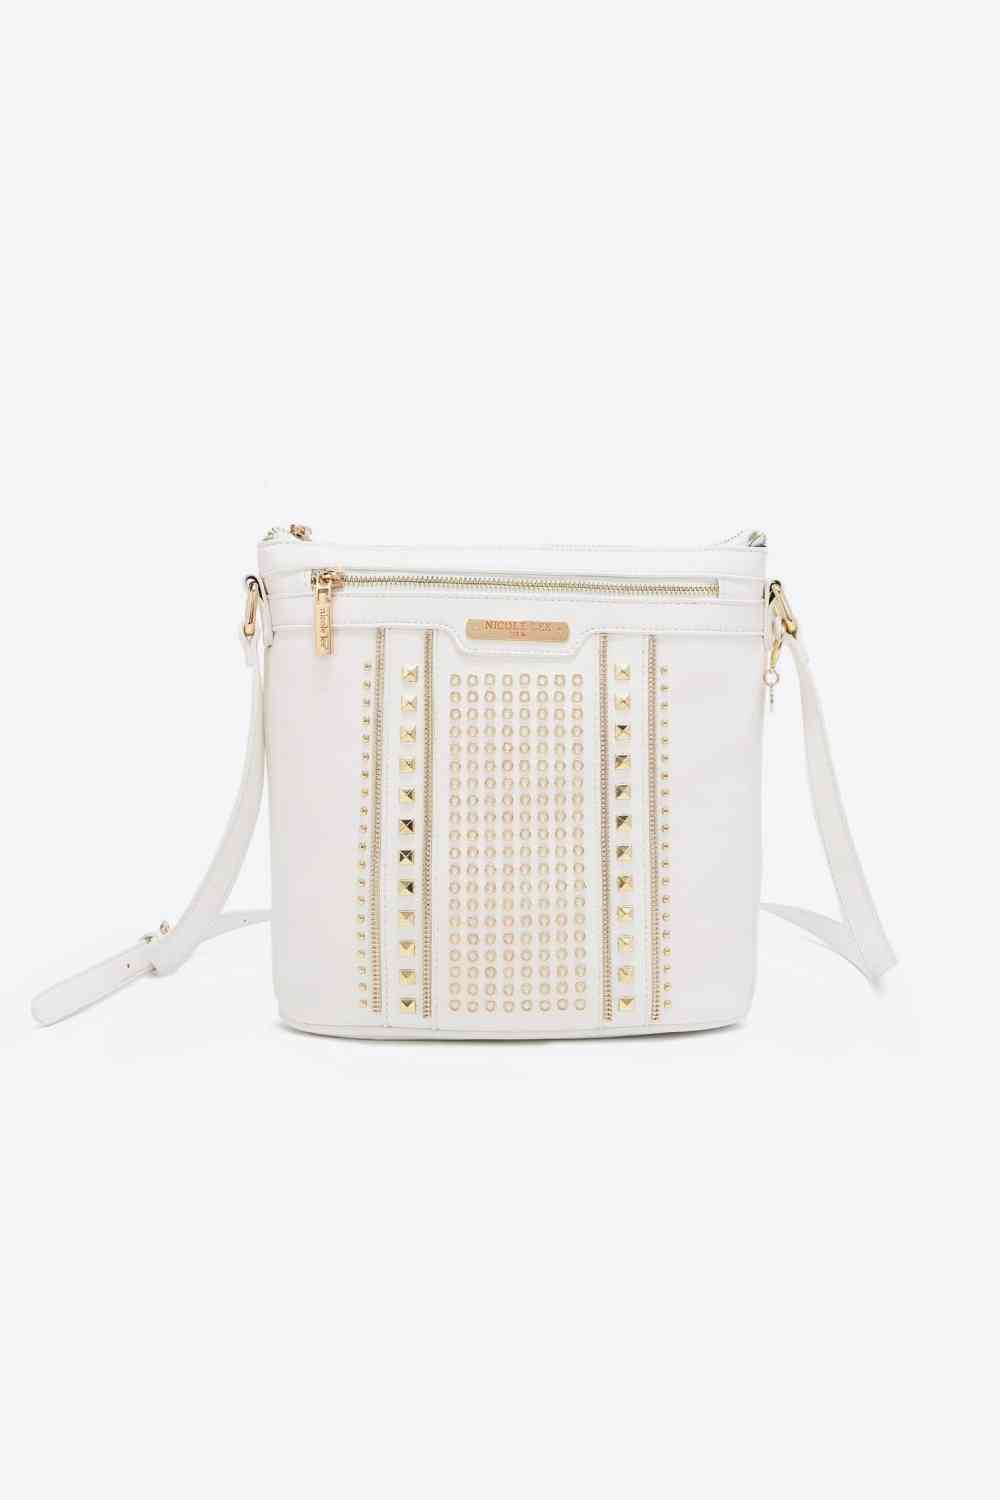 Nicole Lee USA Love Handbag - BEYOND FASHION